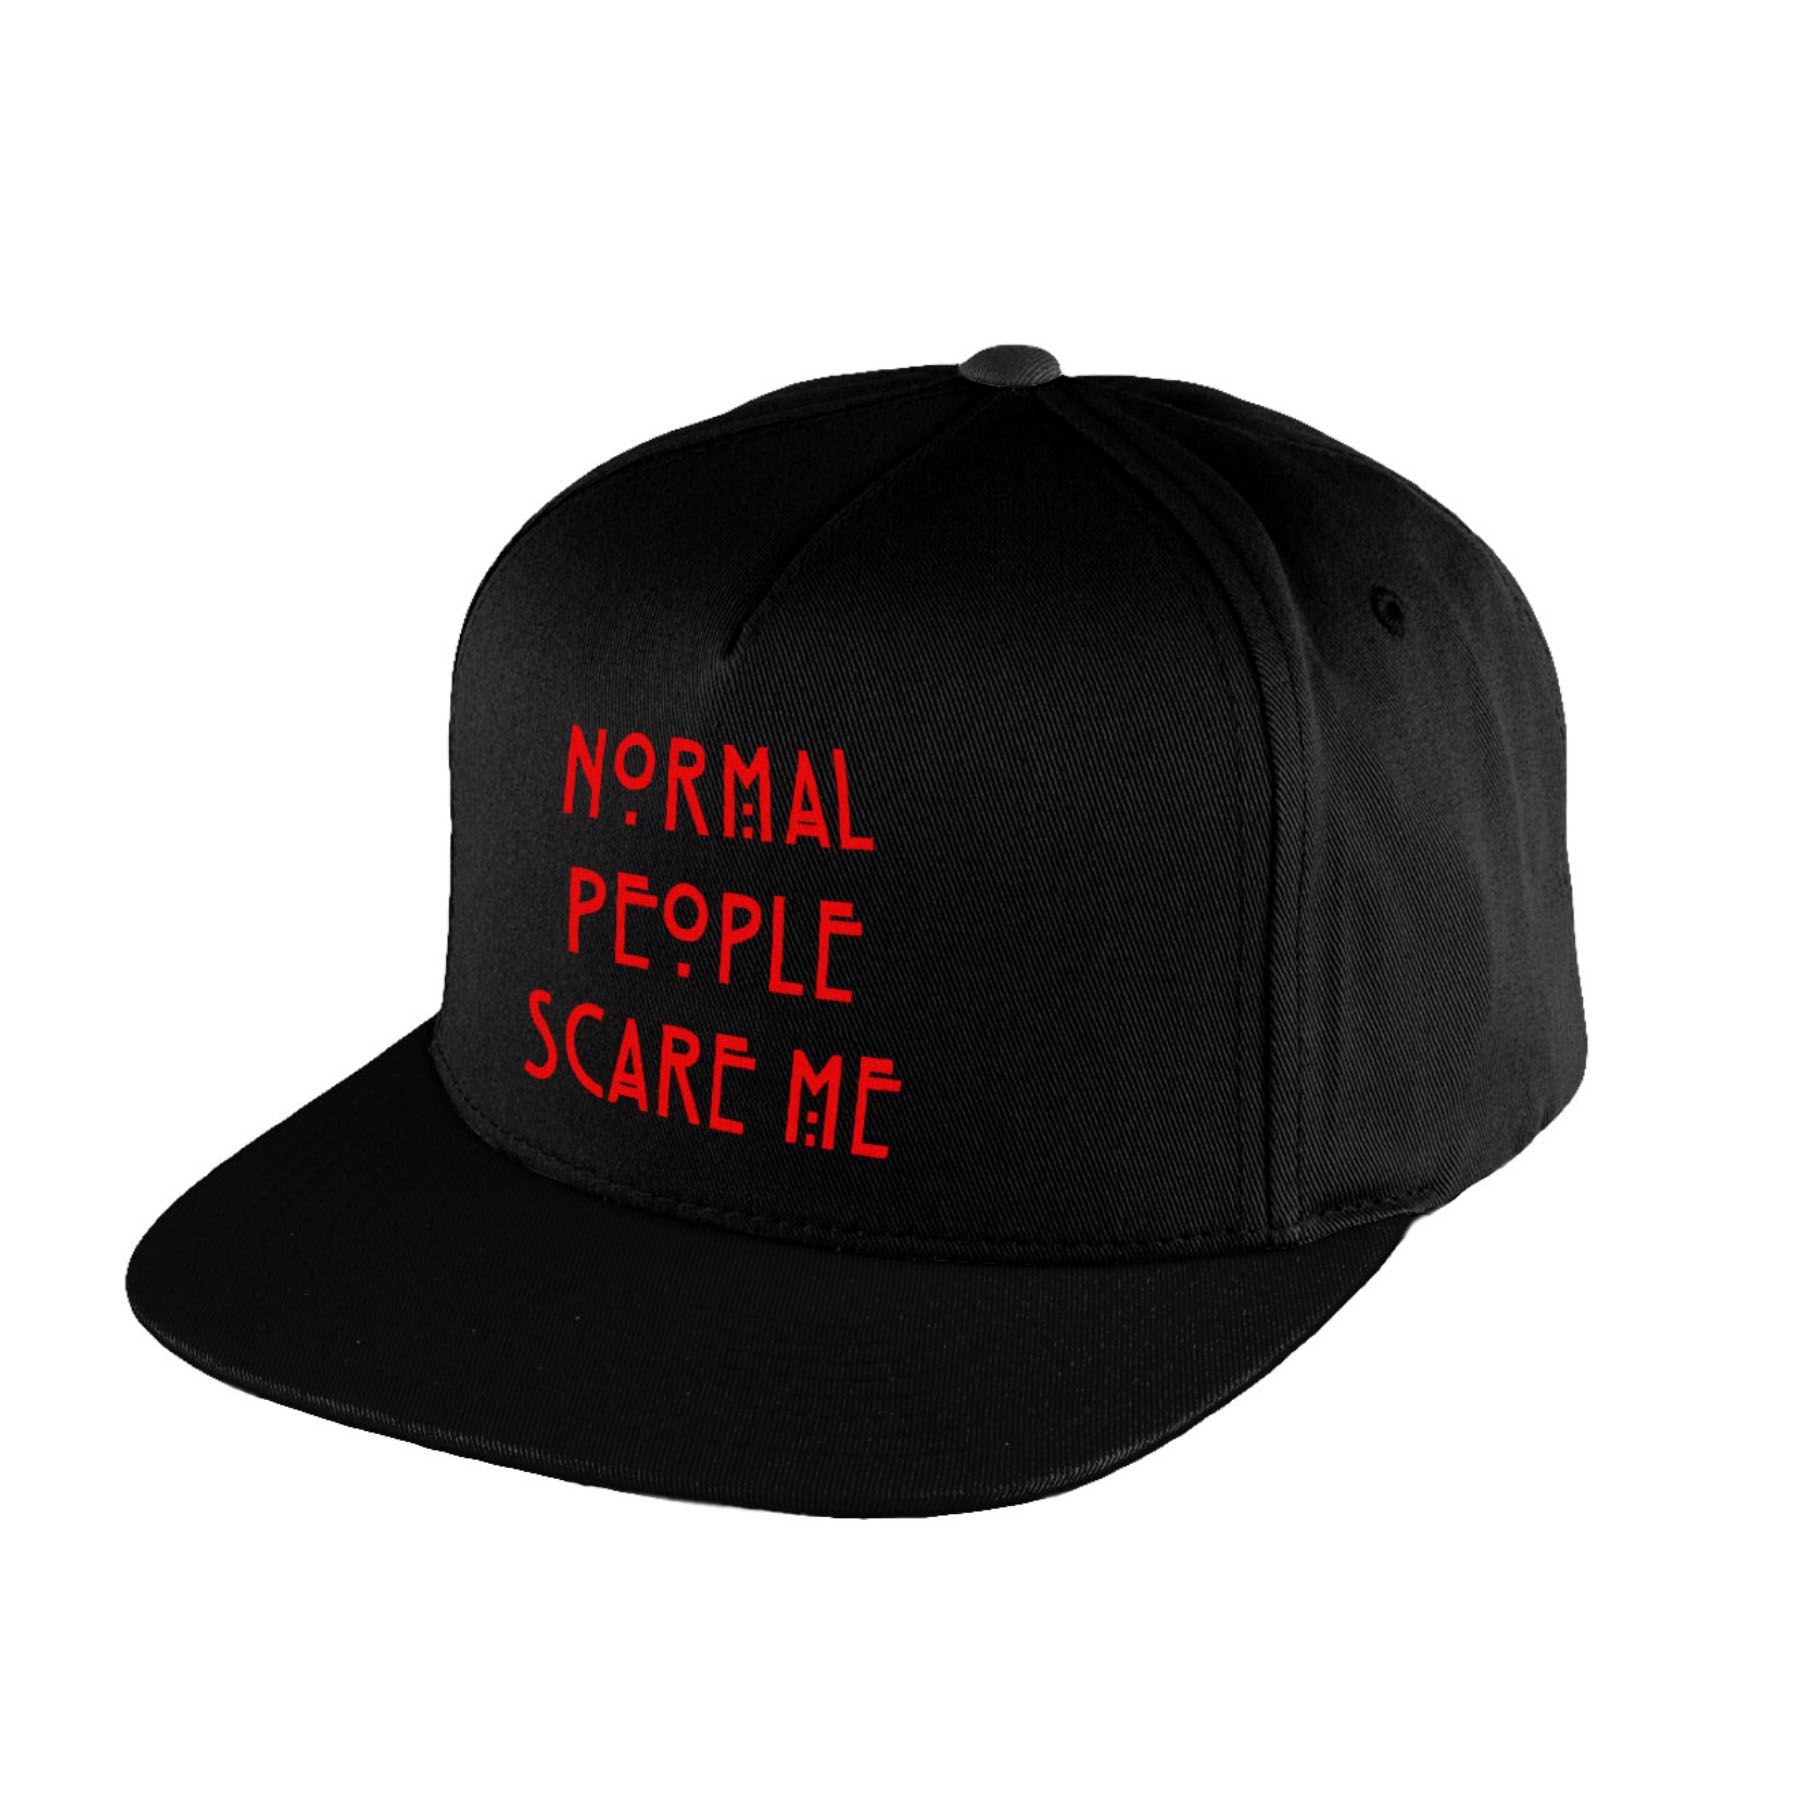 نکته خرید - قیمت روز کلاه کپ مدل Normal People کد KTT-12 خرید